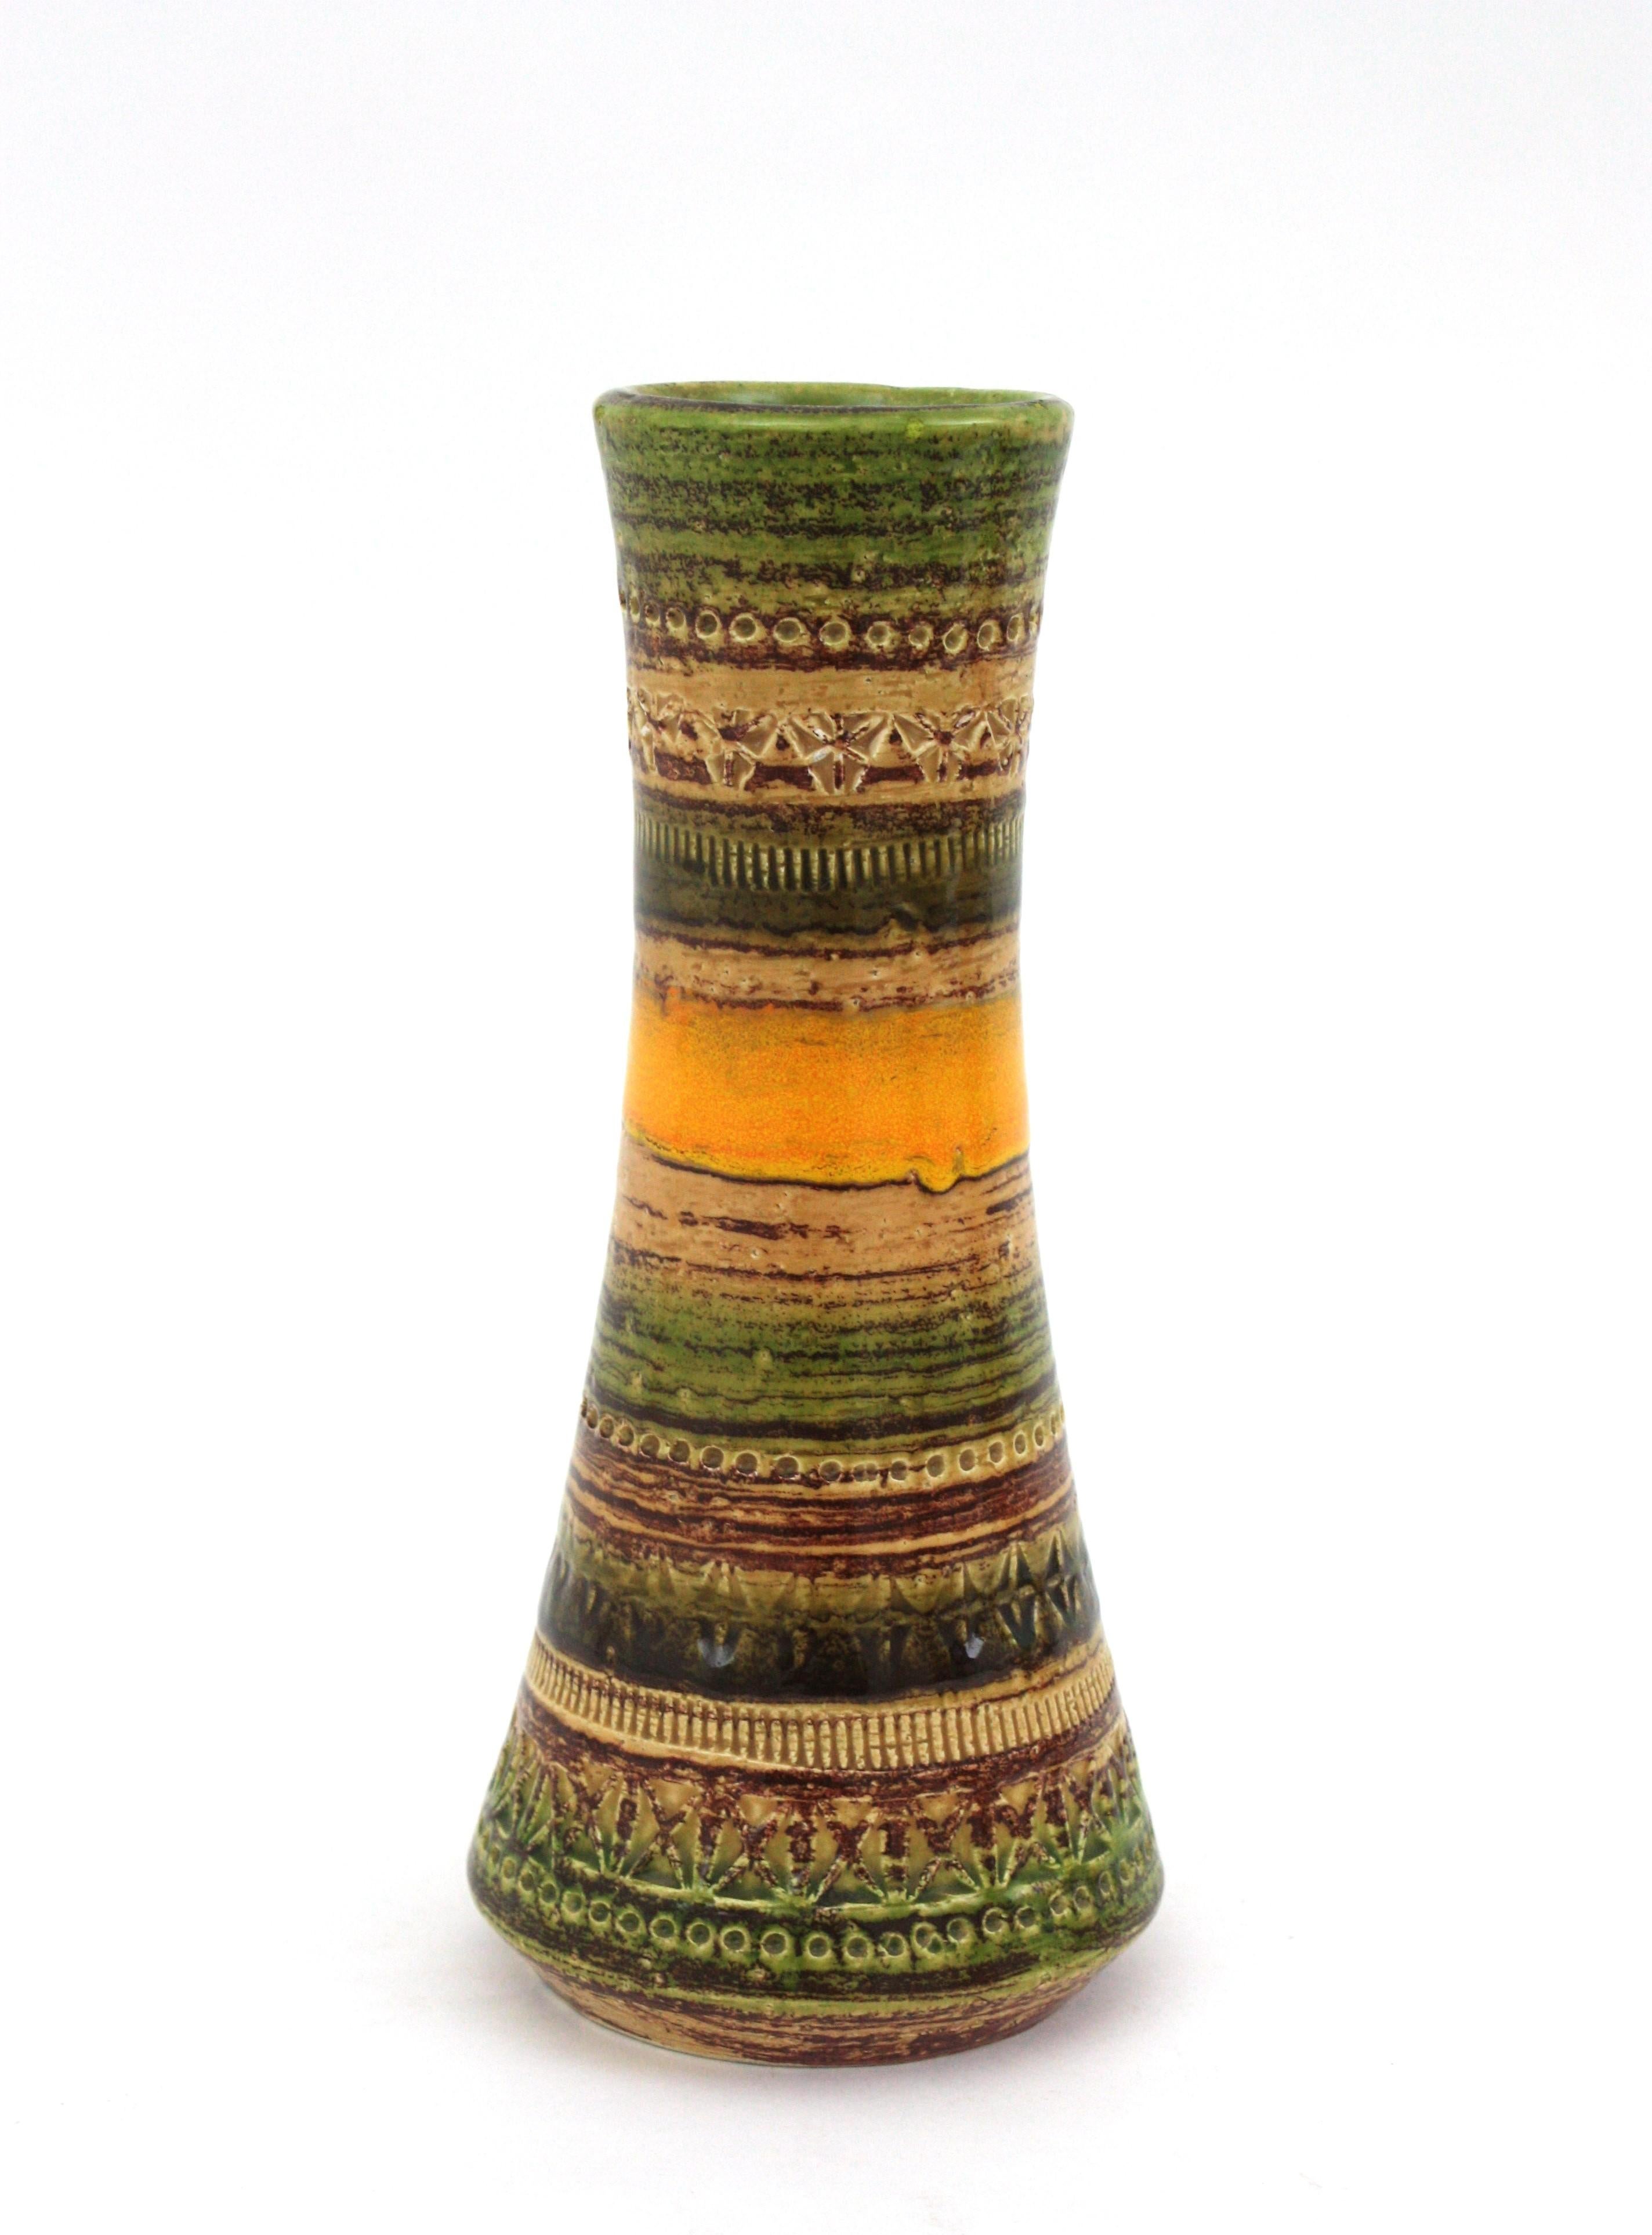 20th Century Bitossi Sahara Aldo Londi Cer Paoli Glazed Ceramic Vases, Italy, 1960s For Sale